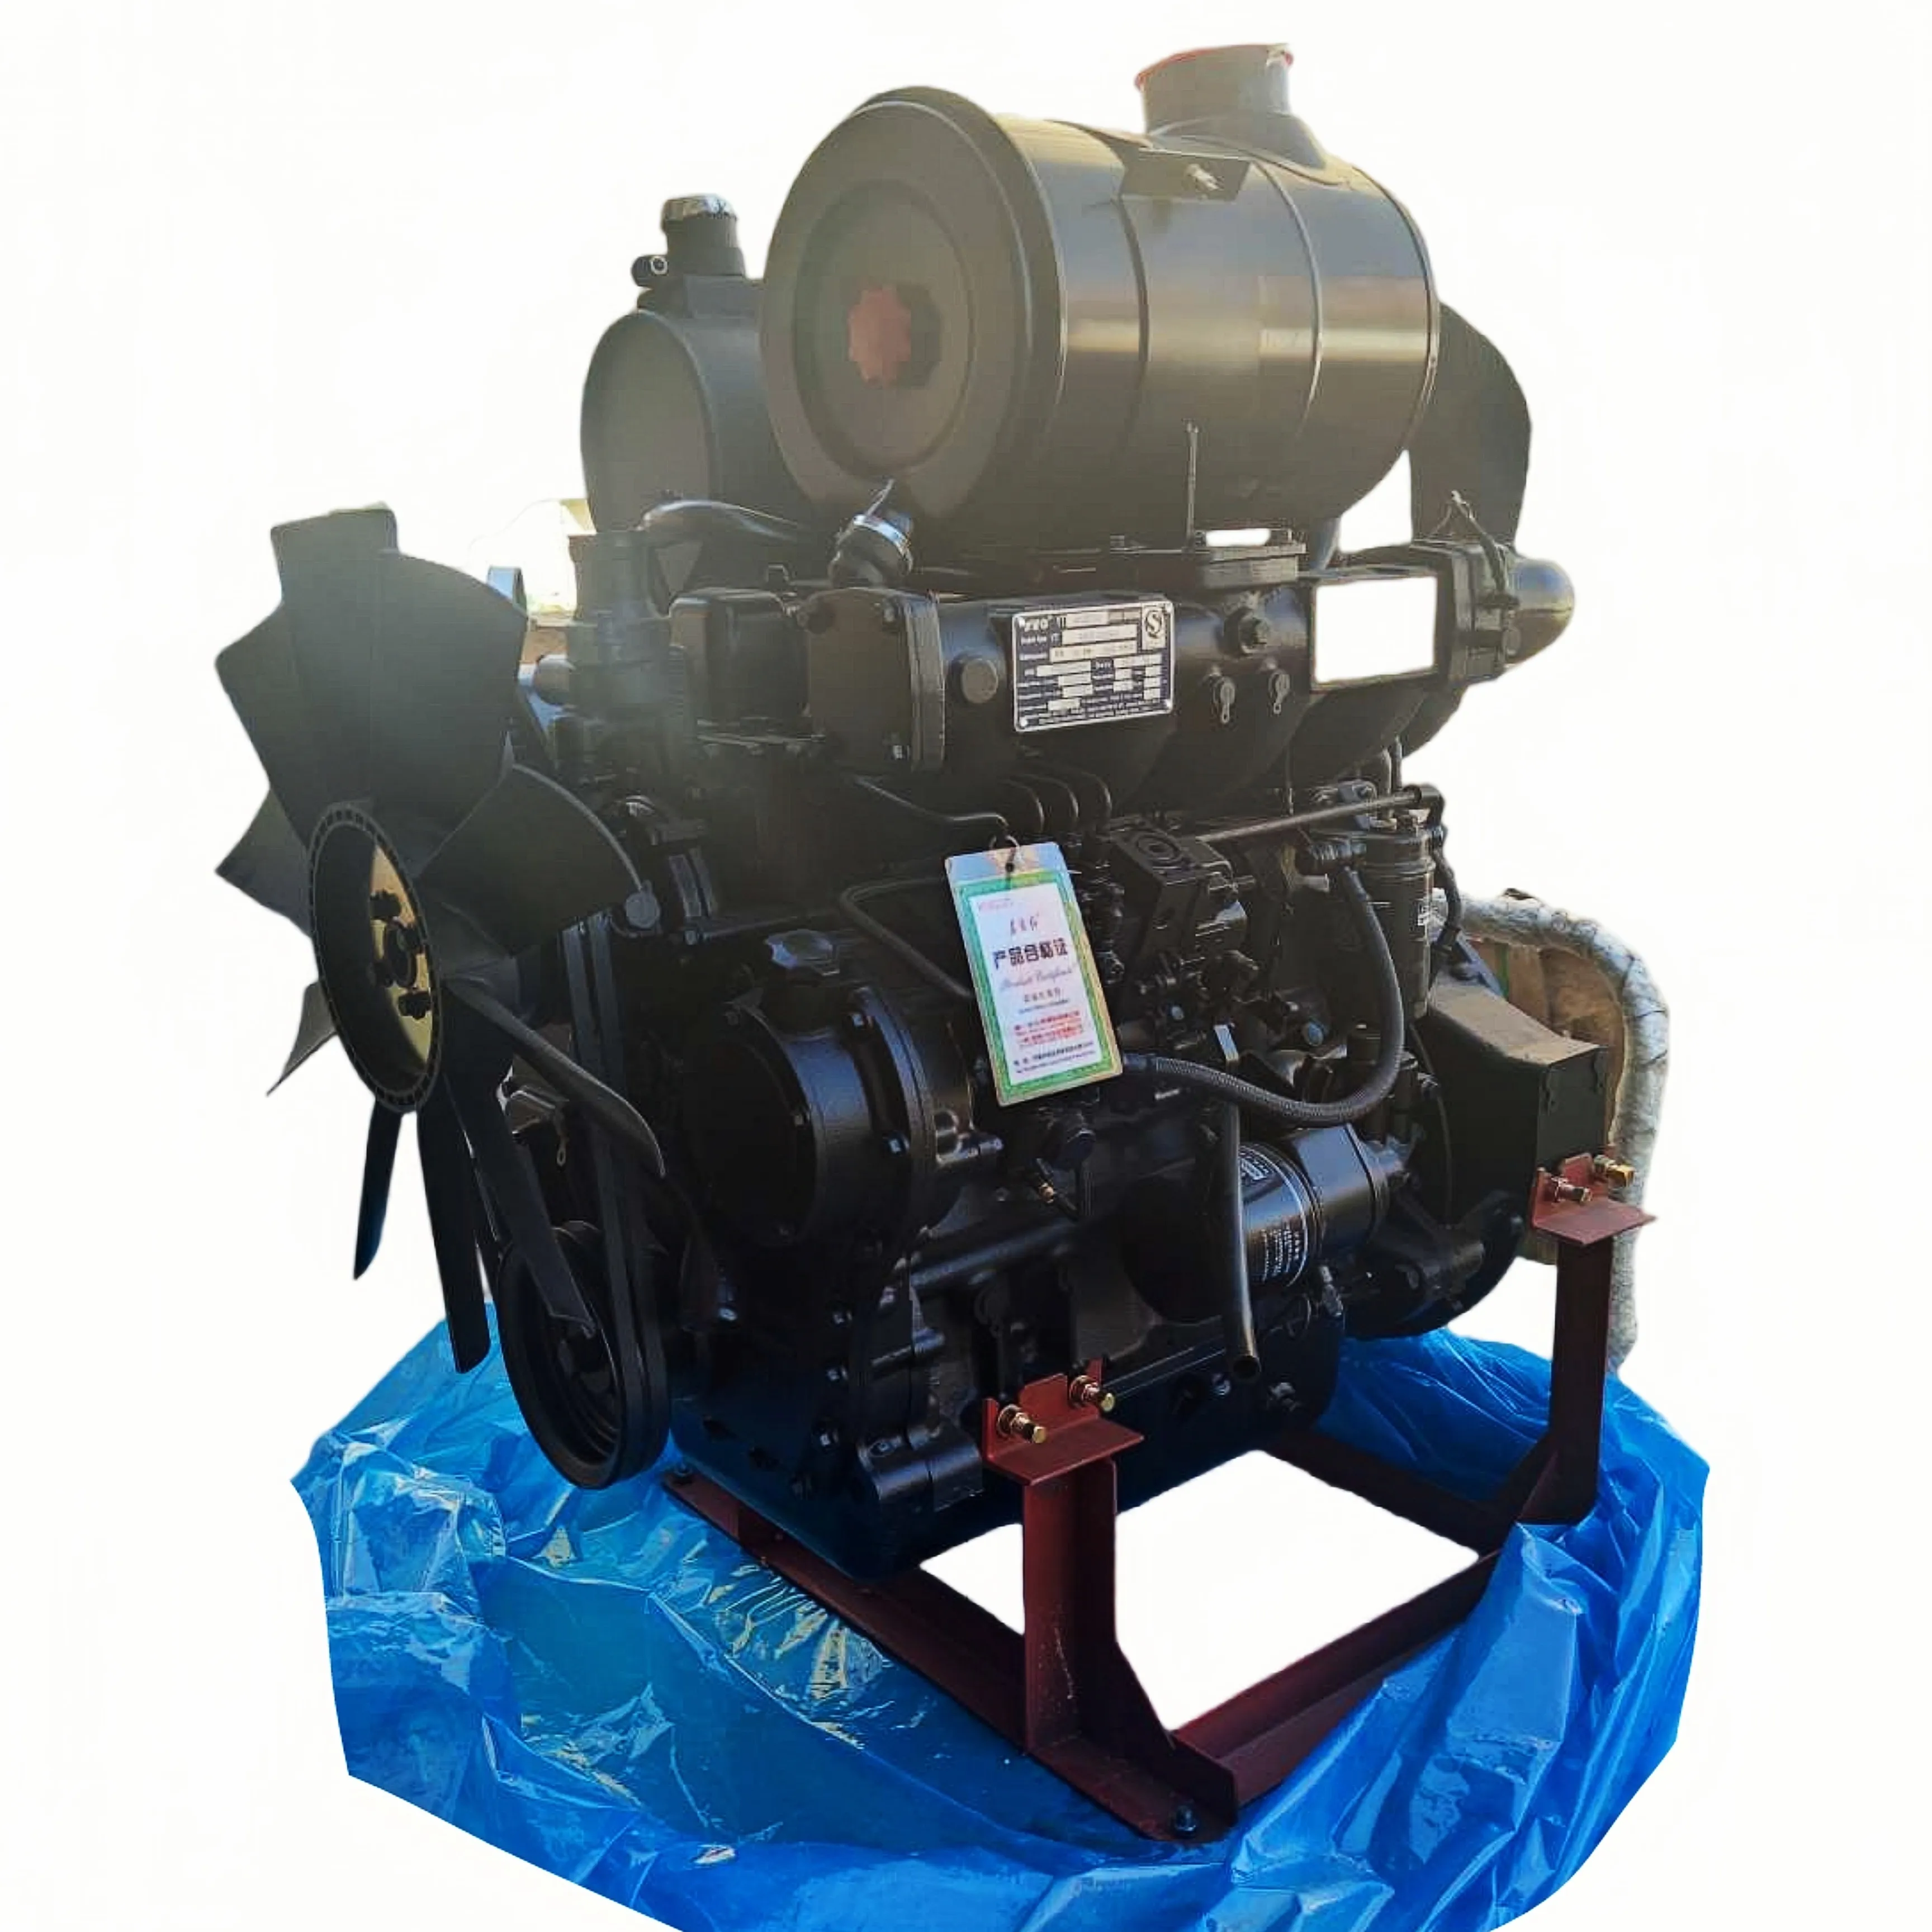 Sıcak yeni düşük fiyat YTO donghong hong YT4A4Z-24 yükleyici kürek özel dizel motor dört eşleşen su pompa silindiri blok